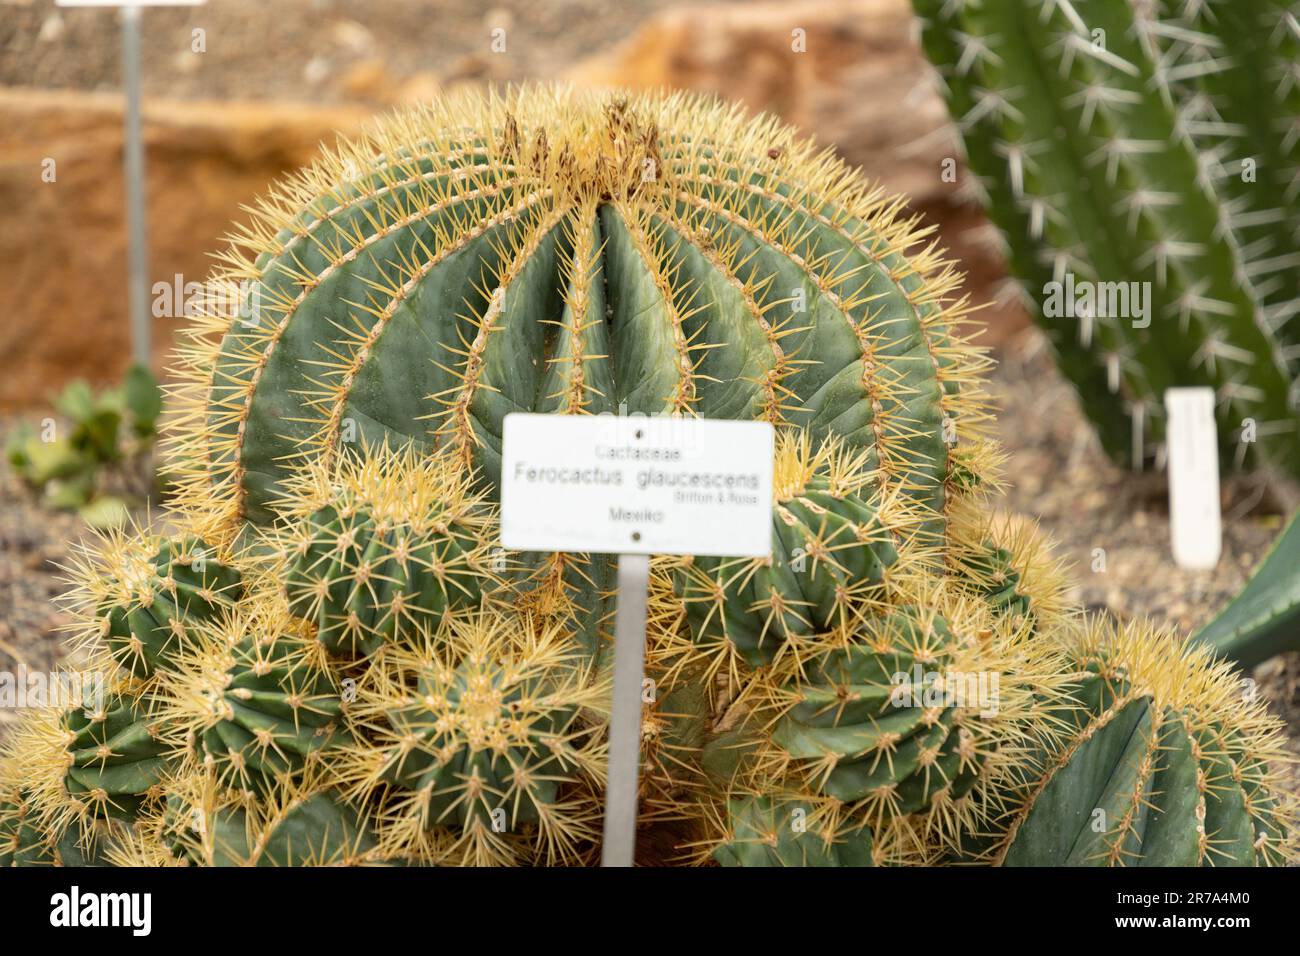 Zurigo, Svizzera, 22 maggio 2023 Cactus barile di Glaucus o Ferocactus Glaucescens presso il giardino botanico Foto Stock